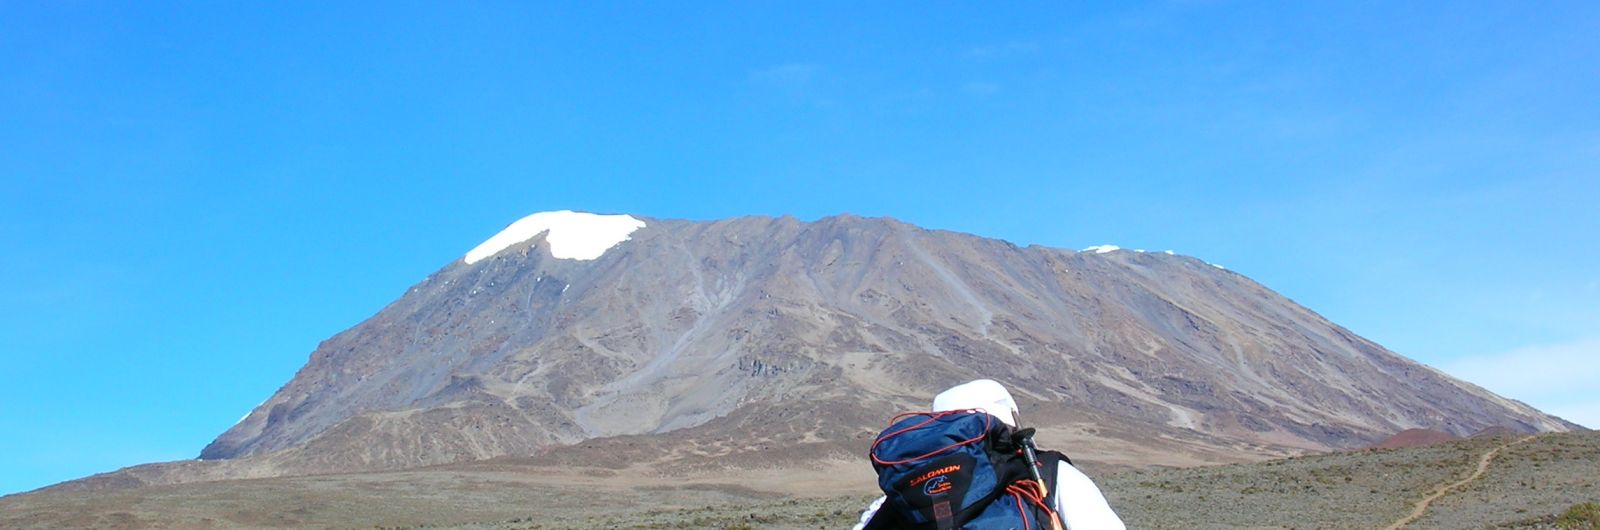 Trekking Kilimanjaro Ruta Marangu